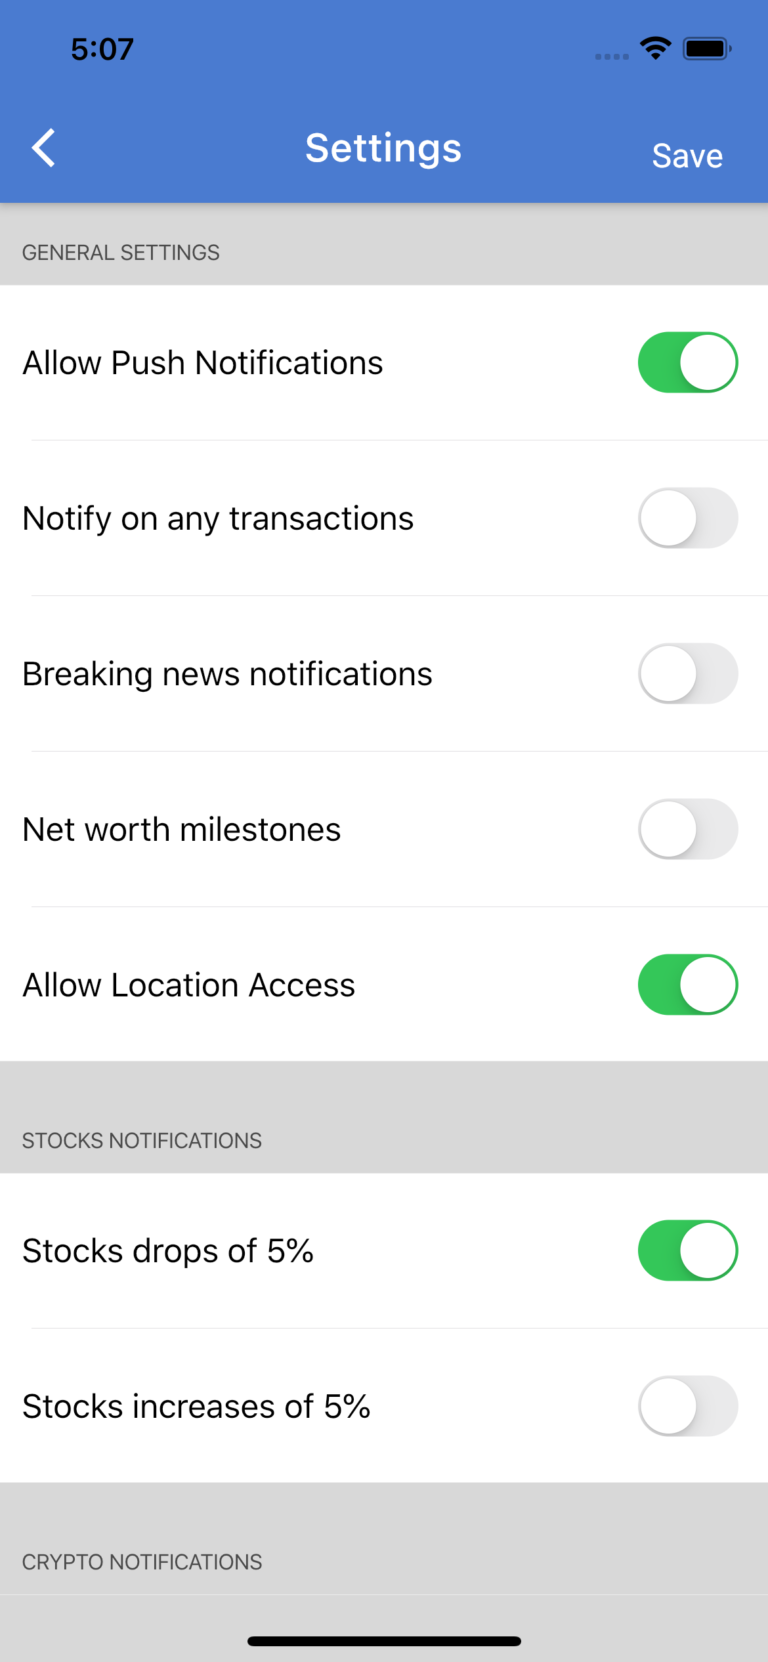 Flutter Finance App Template - Instaflutter